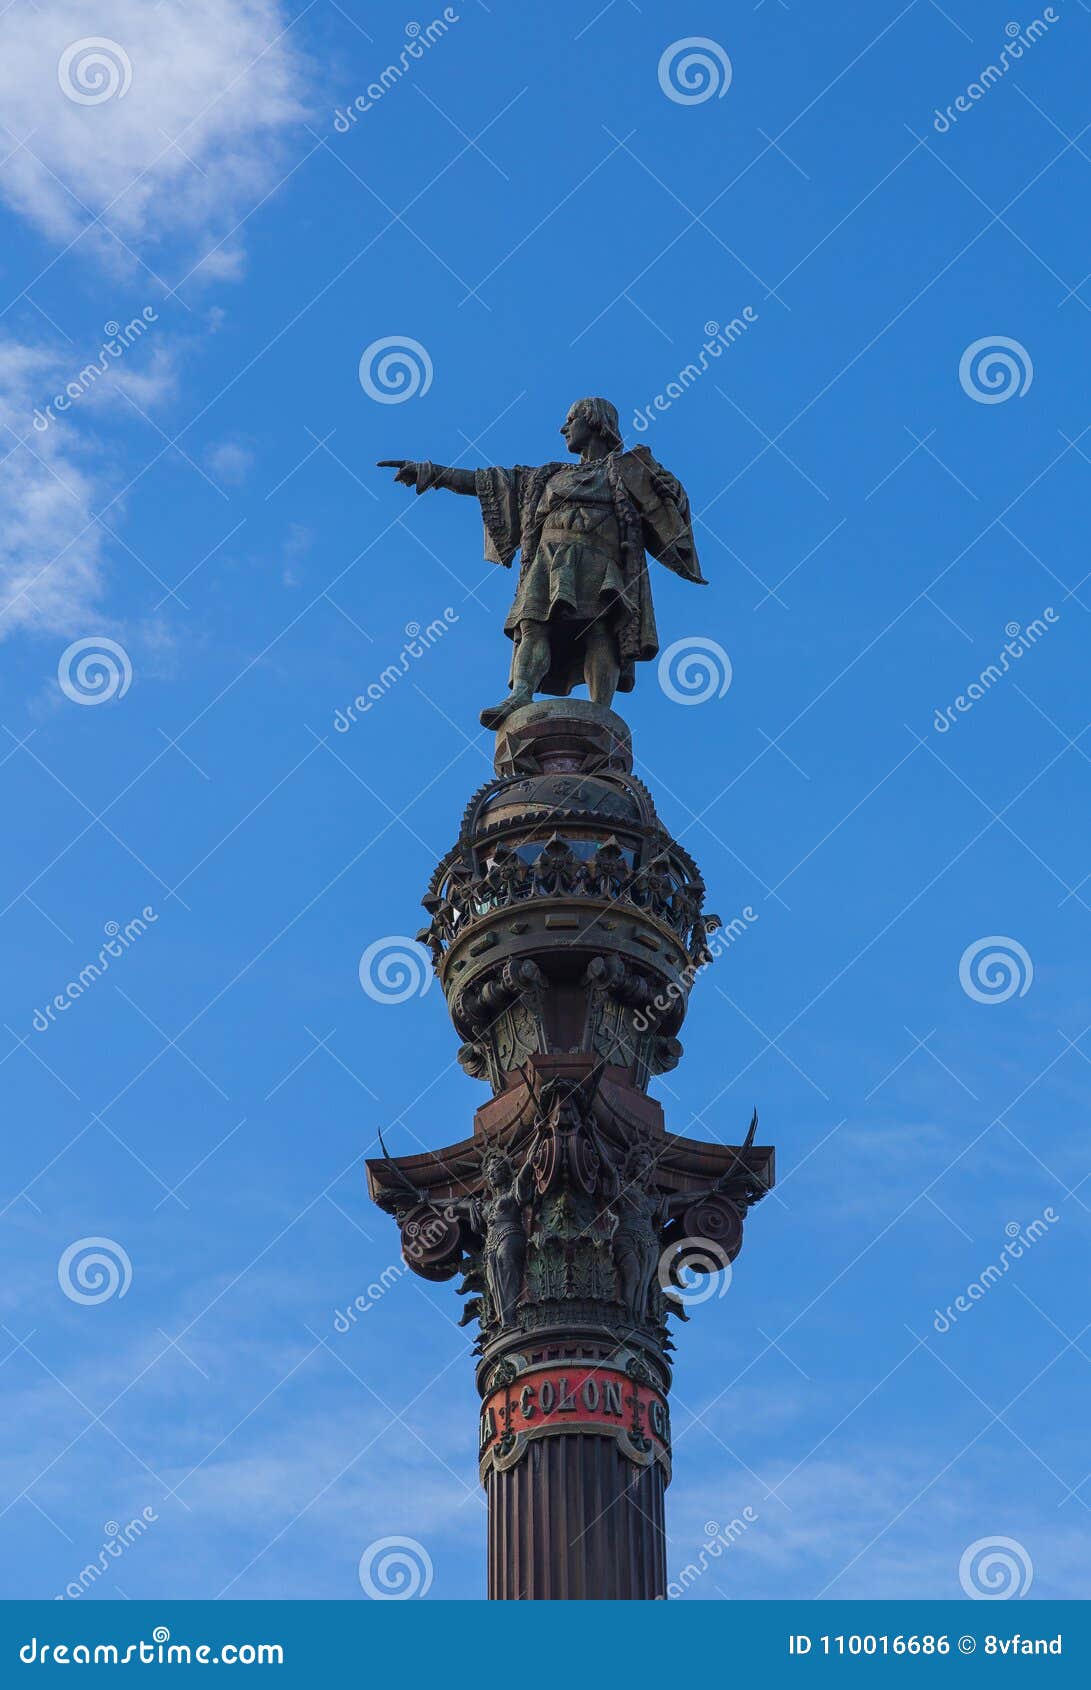 monumento a colon in barcelona spain